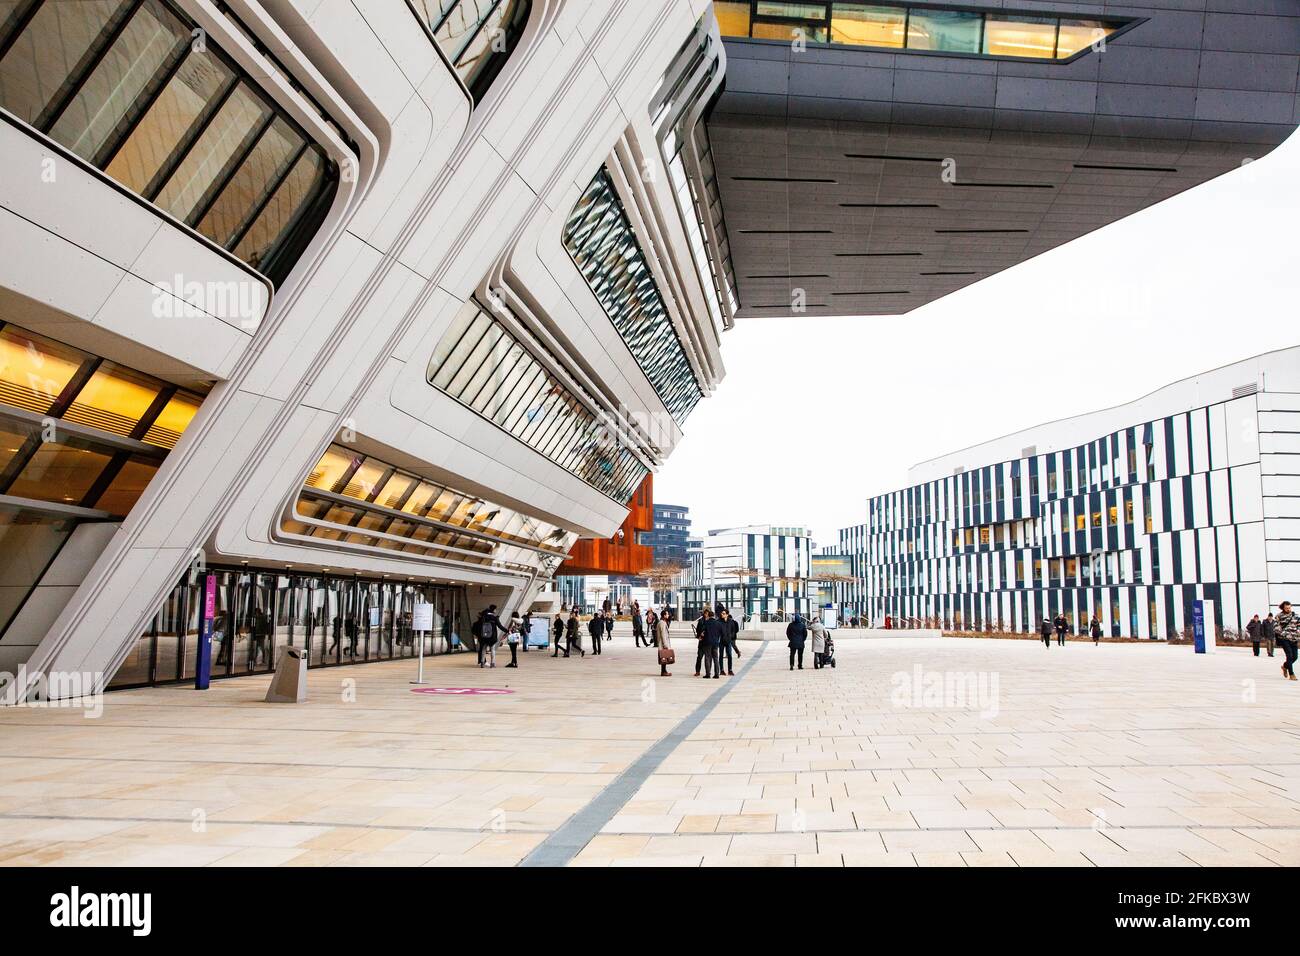 Biblioteca e Centro di apprendimento dell'architetto Zaha Hadid, Università di Economia e Commercio di Vienna (Wirtschaftsuniversitat Wien), Vienna, Austria Foto Stock